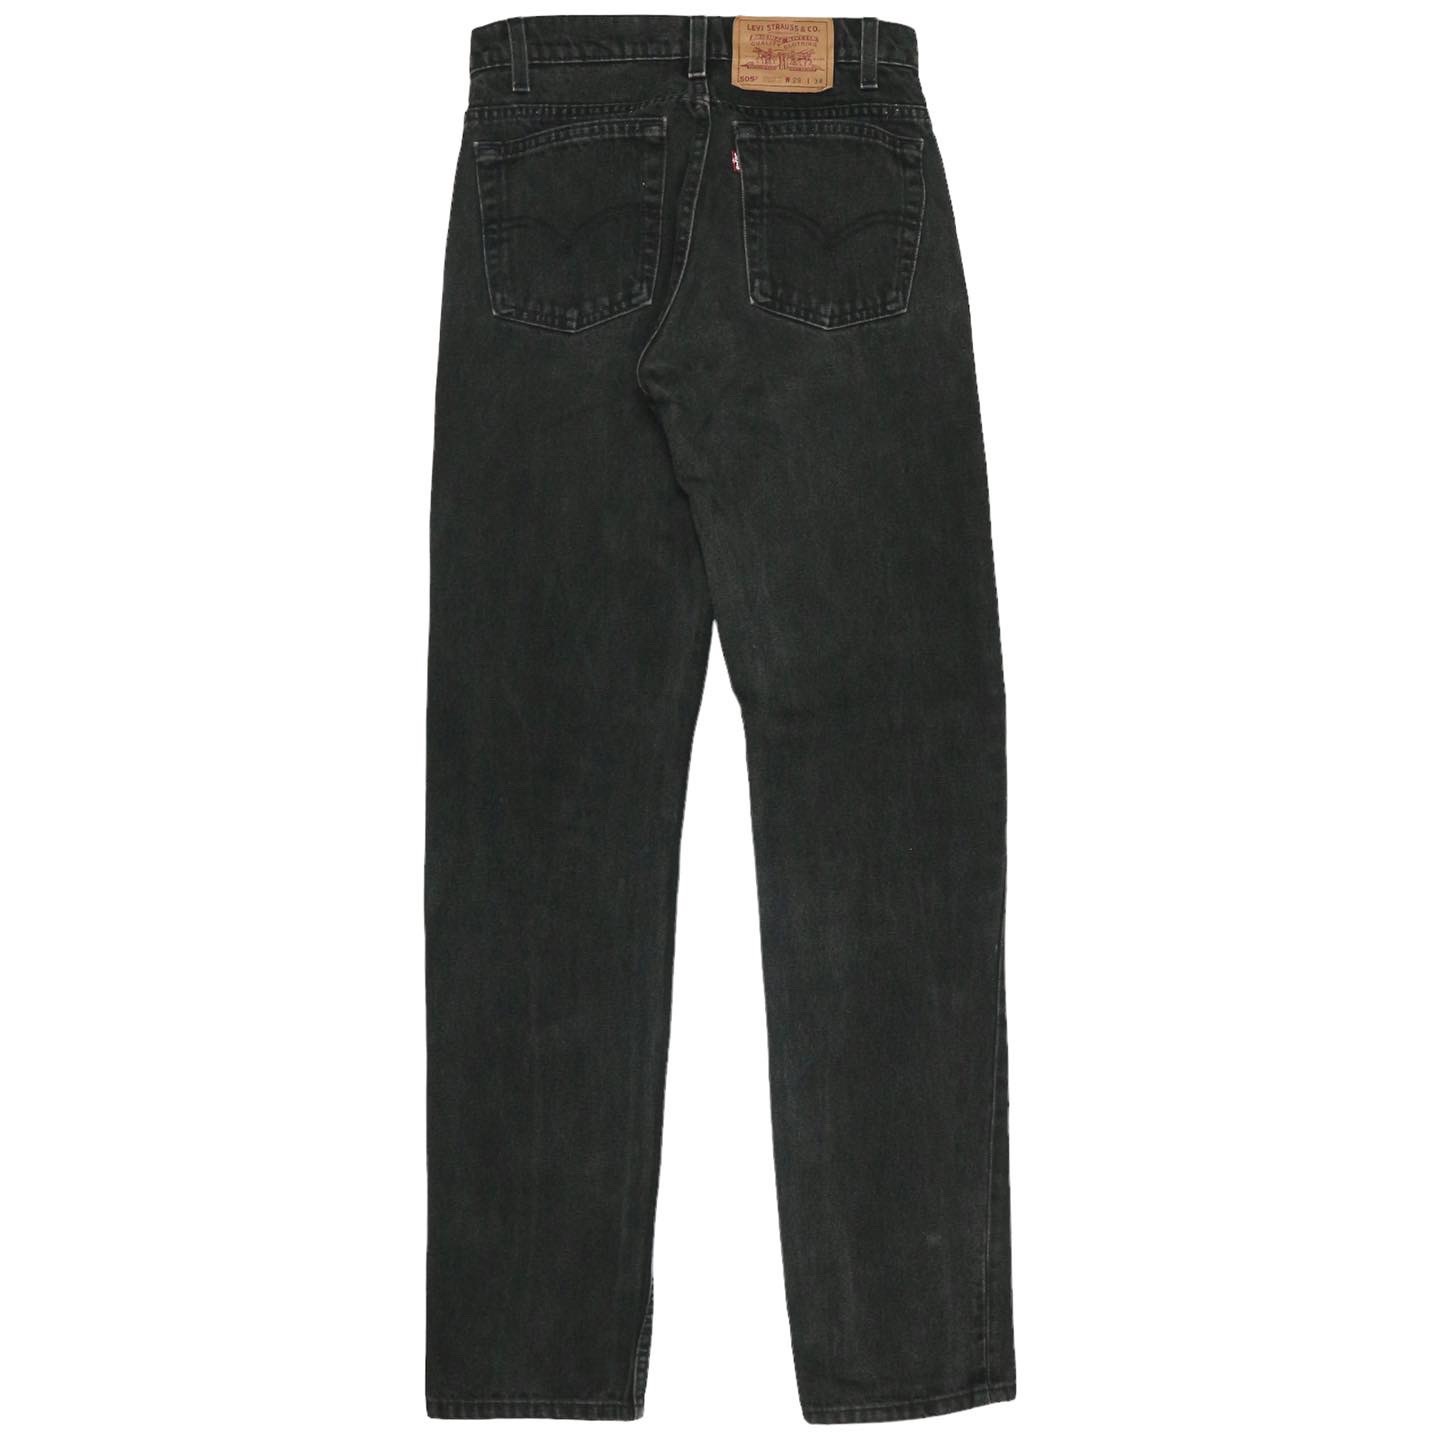 90s Levis 505 USA Denim Jeans Size 27